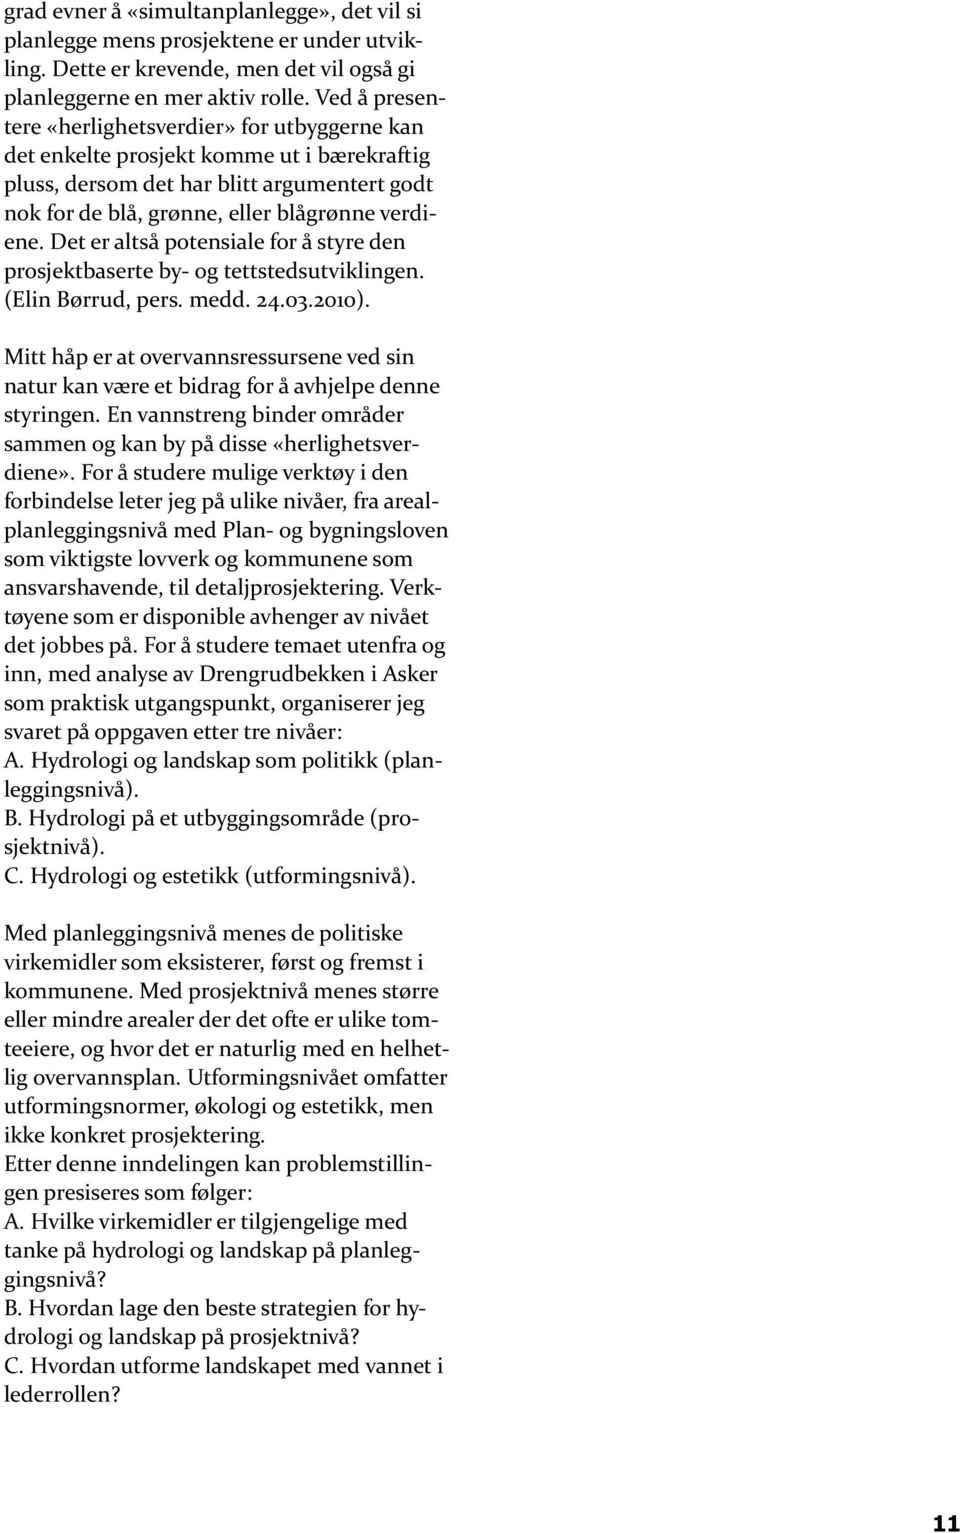 Det er altså potensiale for å styre den prosjektbaserte by- og tettstedsutviklingen. (Elin Børrud, pers. medd. 24.03.2010).